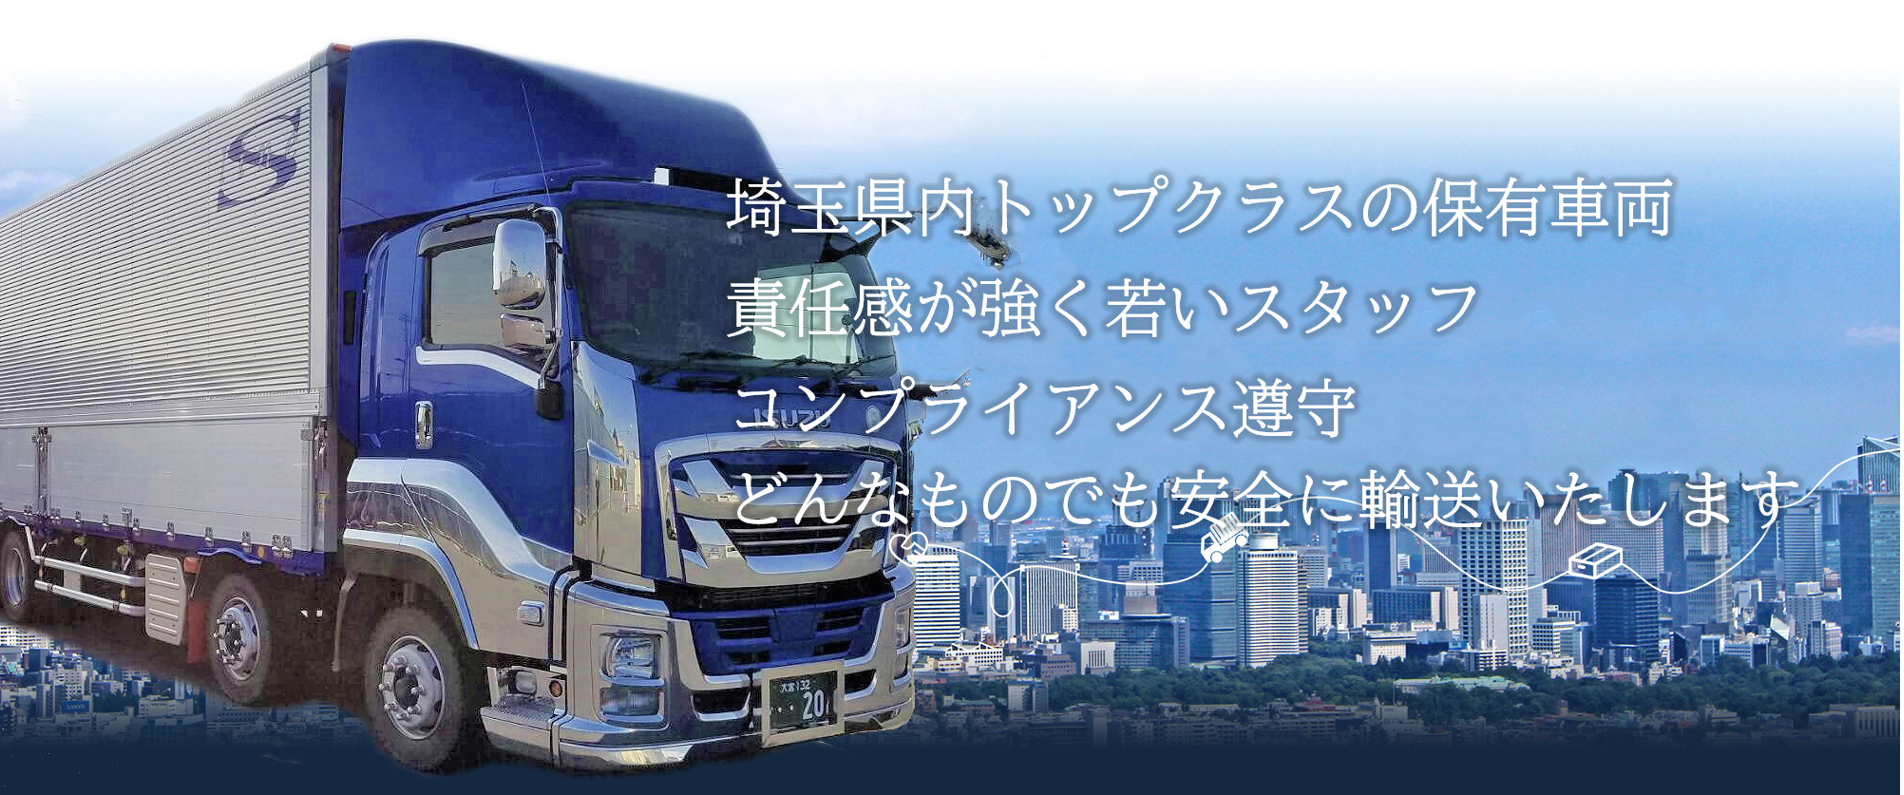 埼玉県で運送業・運送会社をお探しなら | 74台の保有車両 責任感が強く若いスタッフ コンプライアンス遵守  どんなものでも安全に輸送いたします